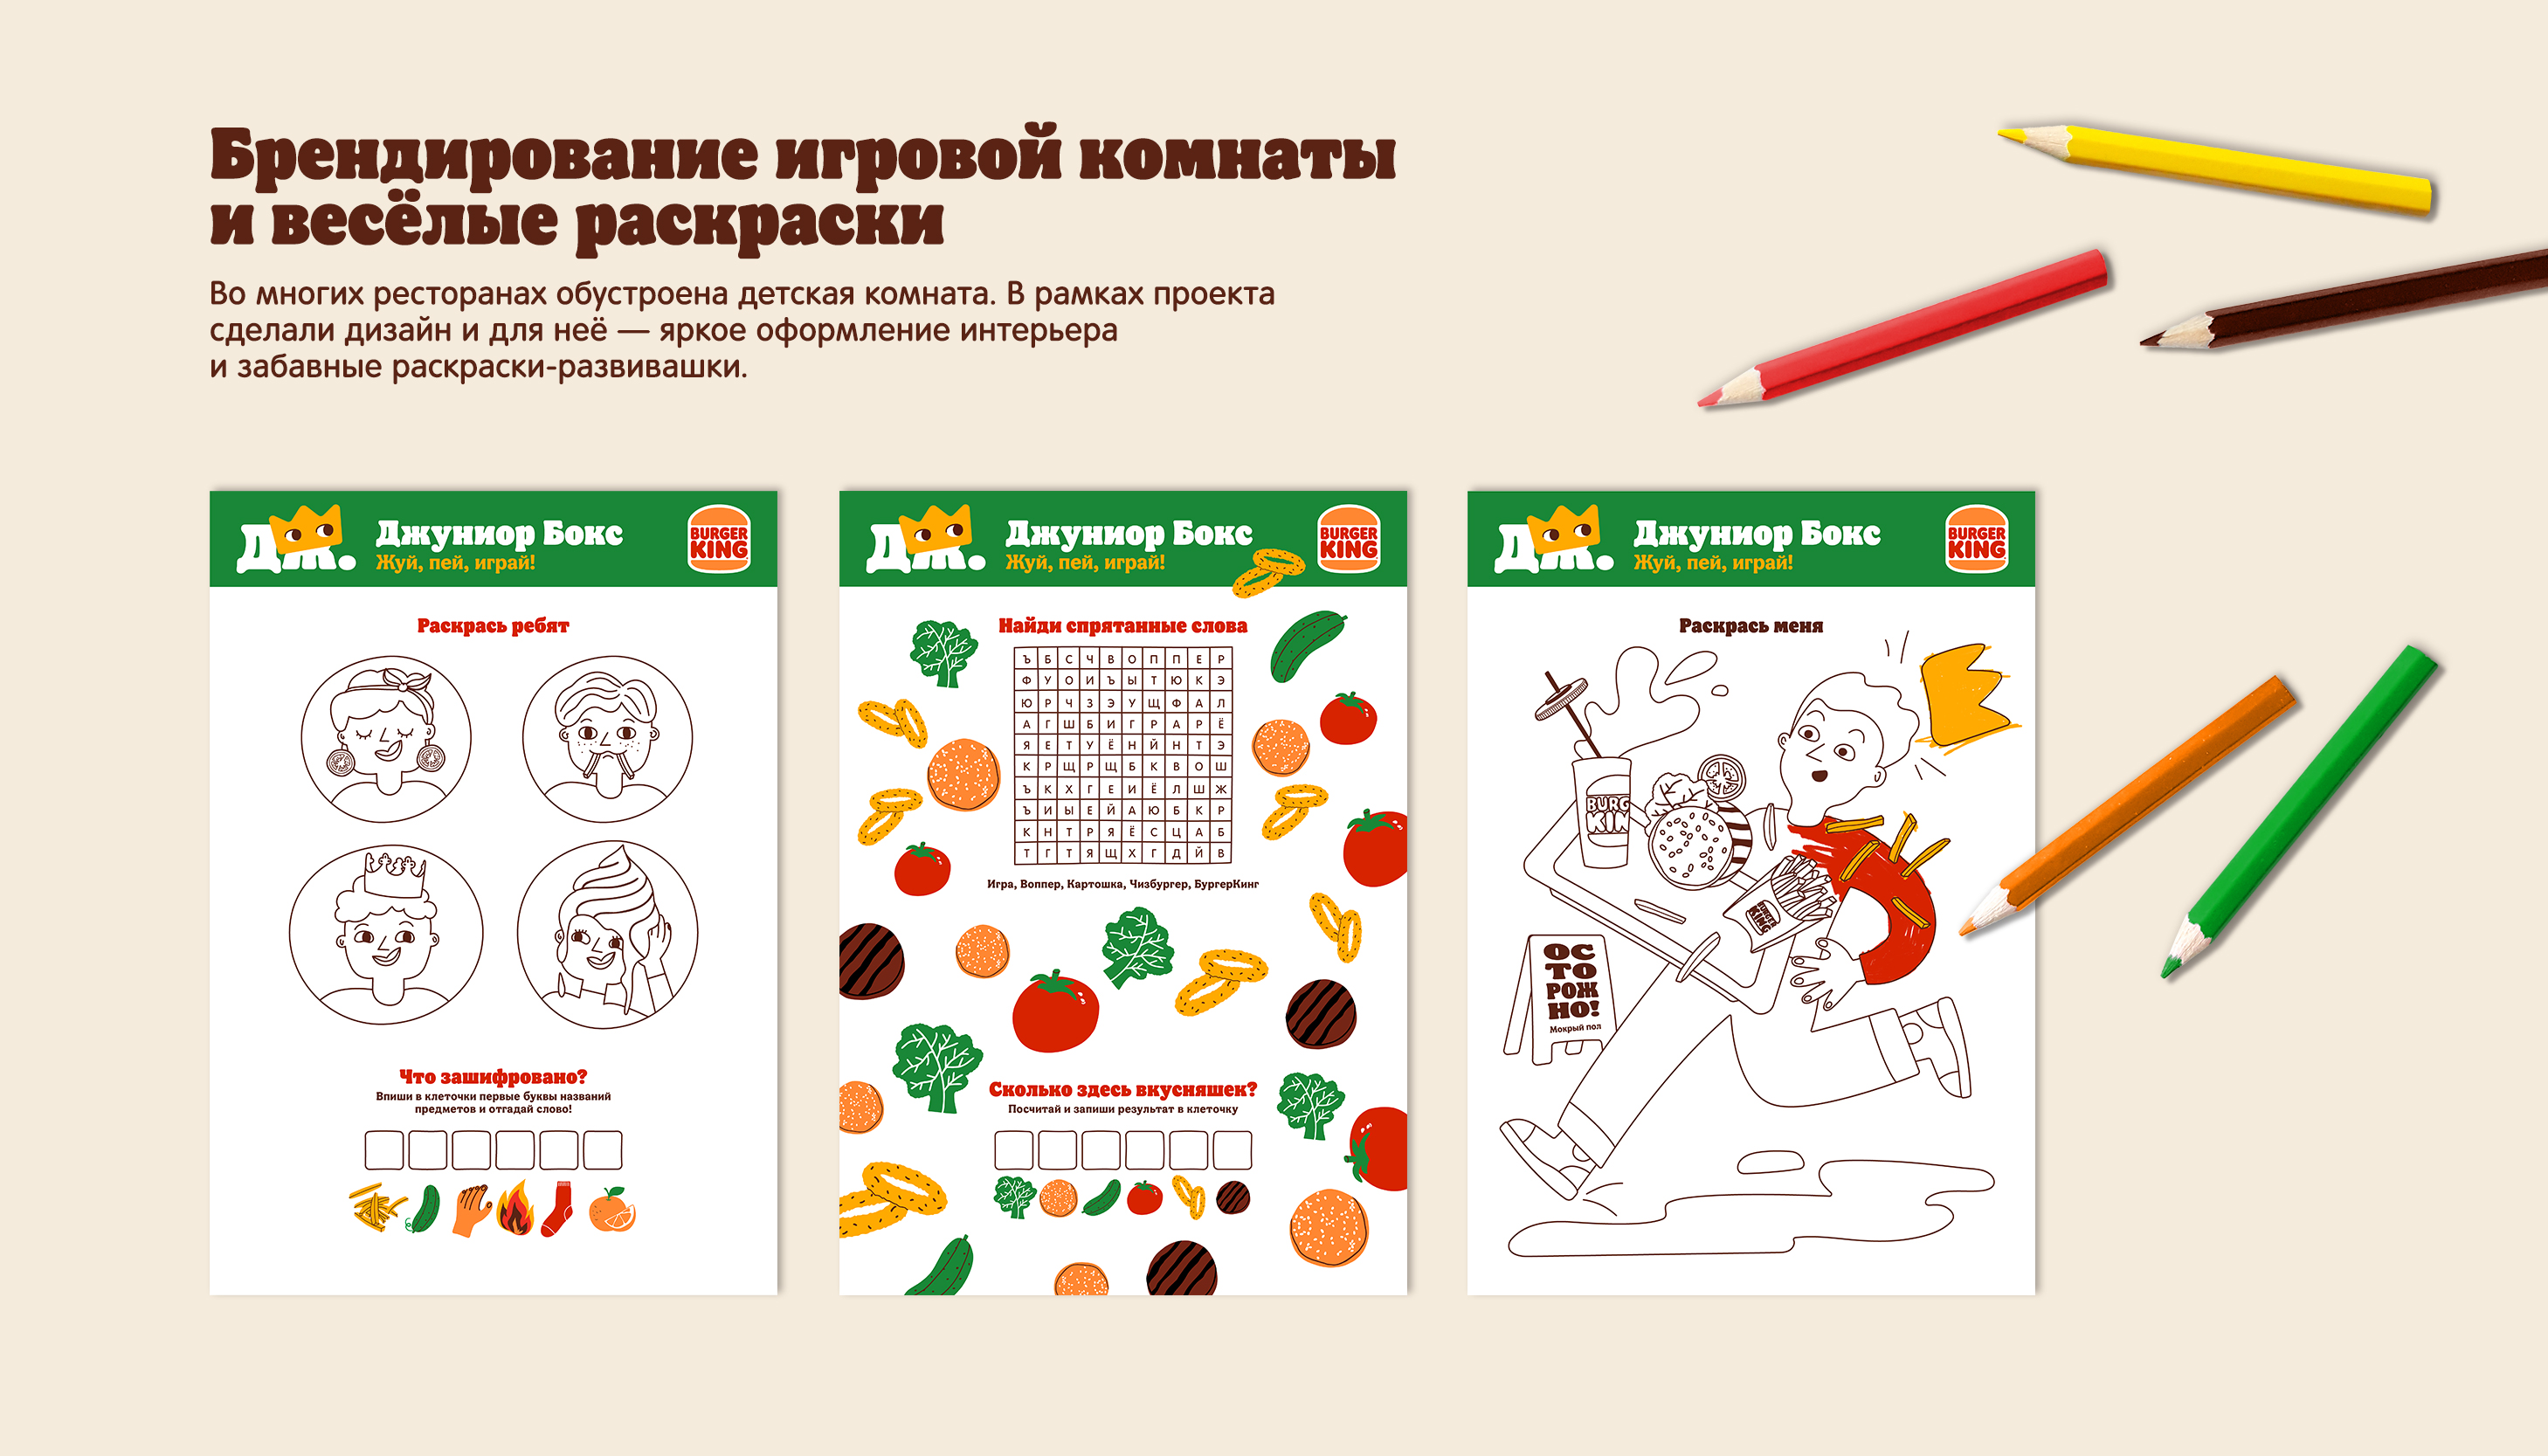 Редизайн Детских обедов для Бургер Кинга — Изображение №8 — Брендинг, Иллюстрация на Dprofile